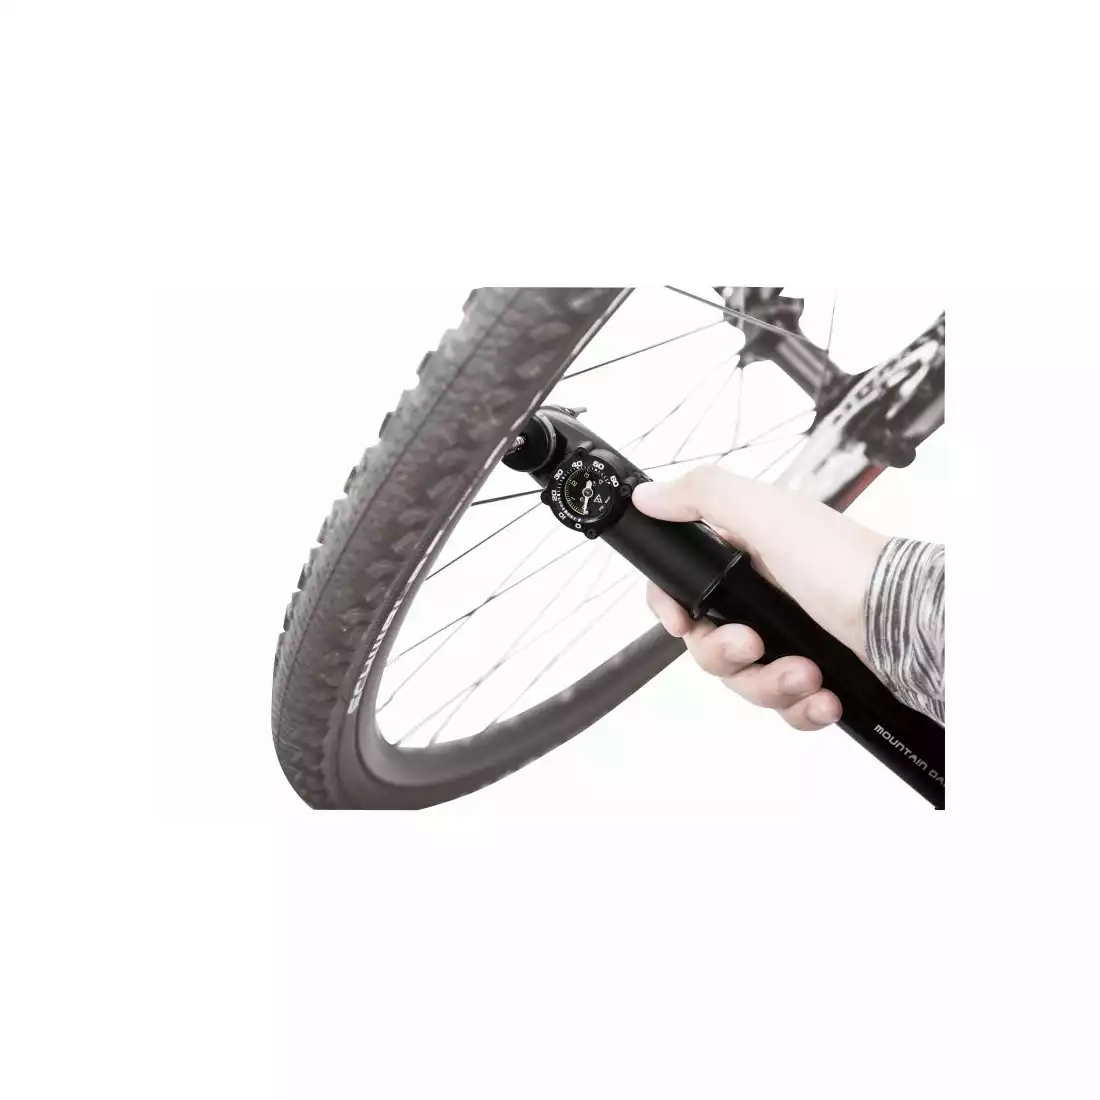 TOPEAK MOUNTAIN DA G DUAL ACTION kerékpáros szivattyú nyomásmérővel